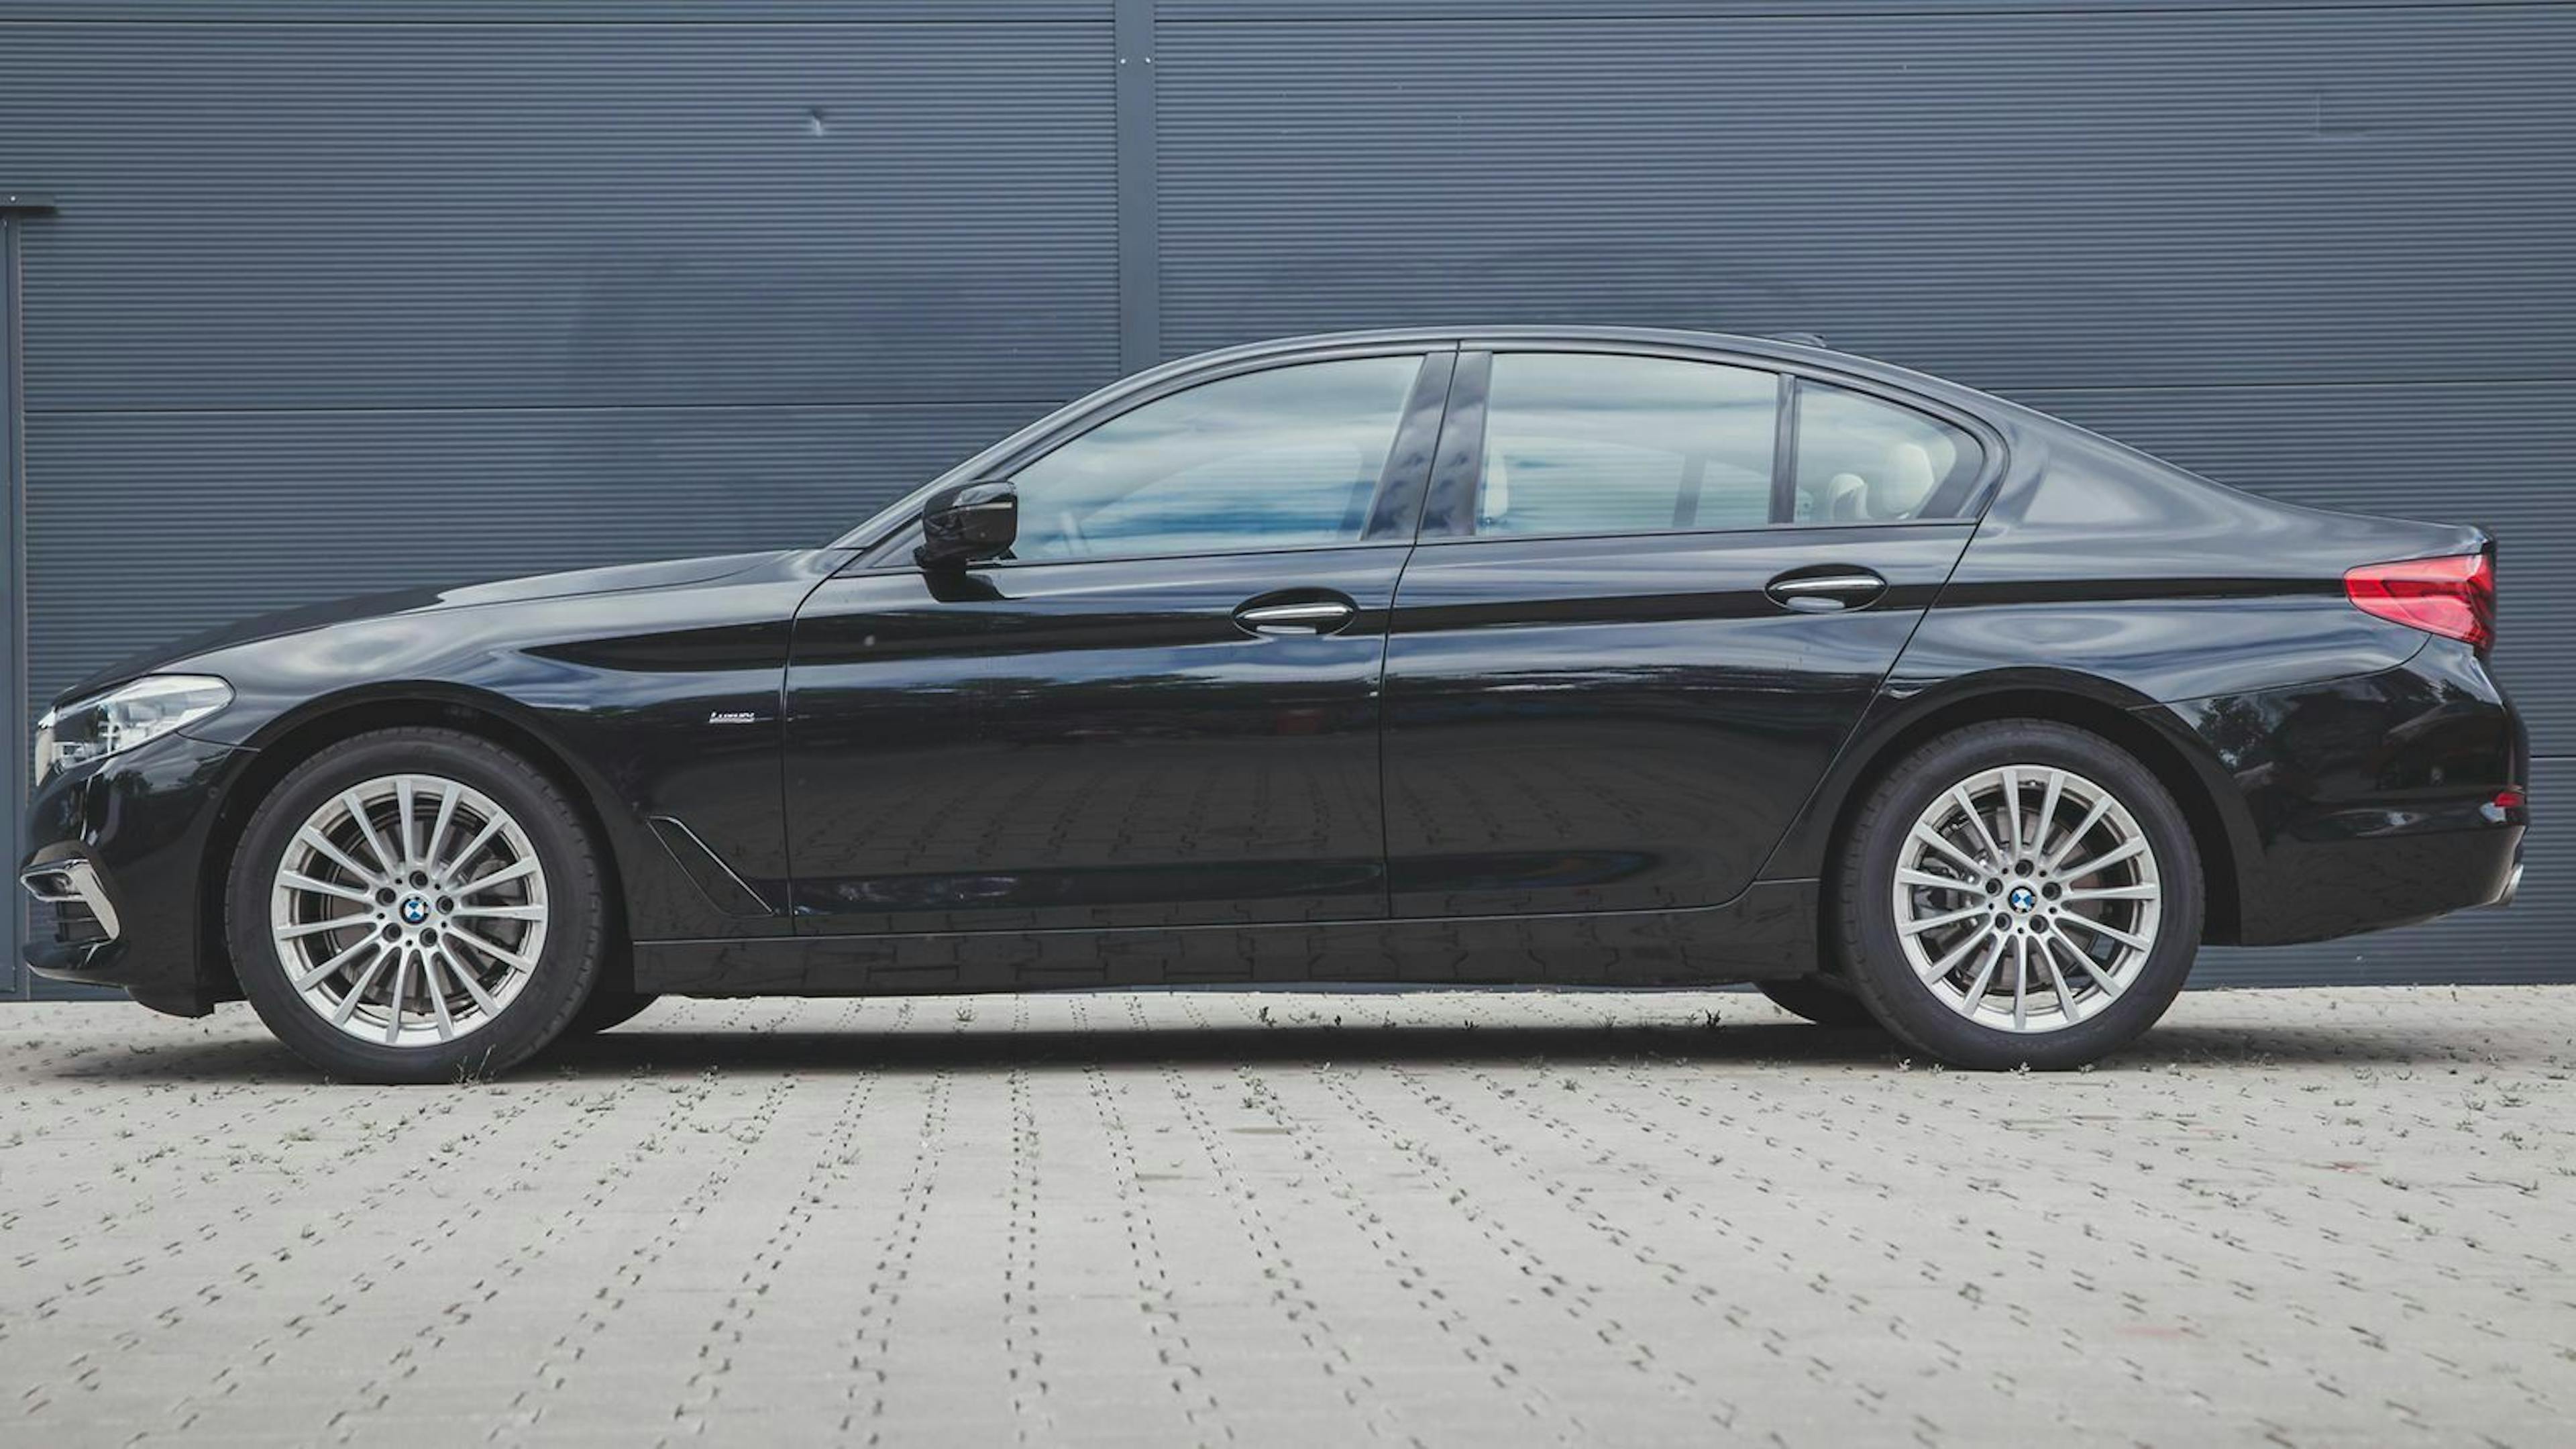 Der BMW 520d in der Ausstattung aus unserem Test kostet 76.020 Euro